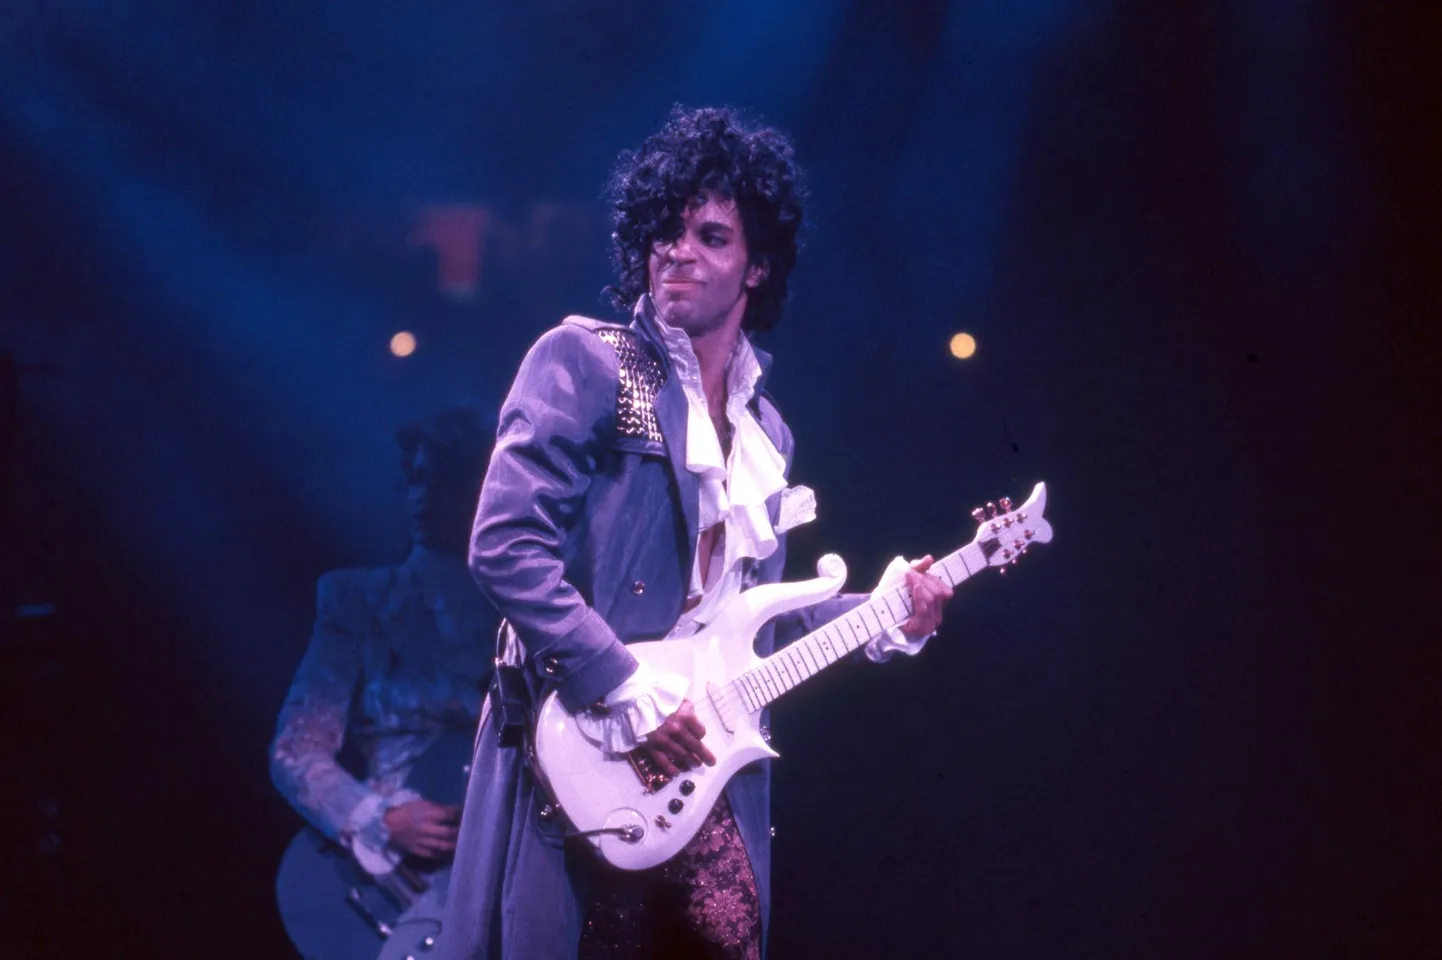 Oma generatsiooni suurimaid muusikaikoone Prince jõudis elada 57 aastat ning jätta endast maha tohutu muusikalise pärandi.